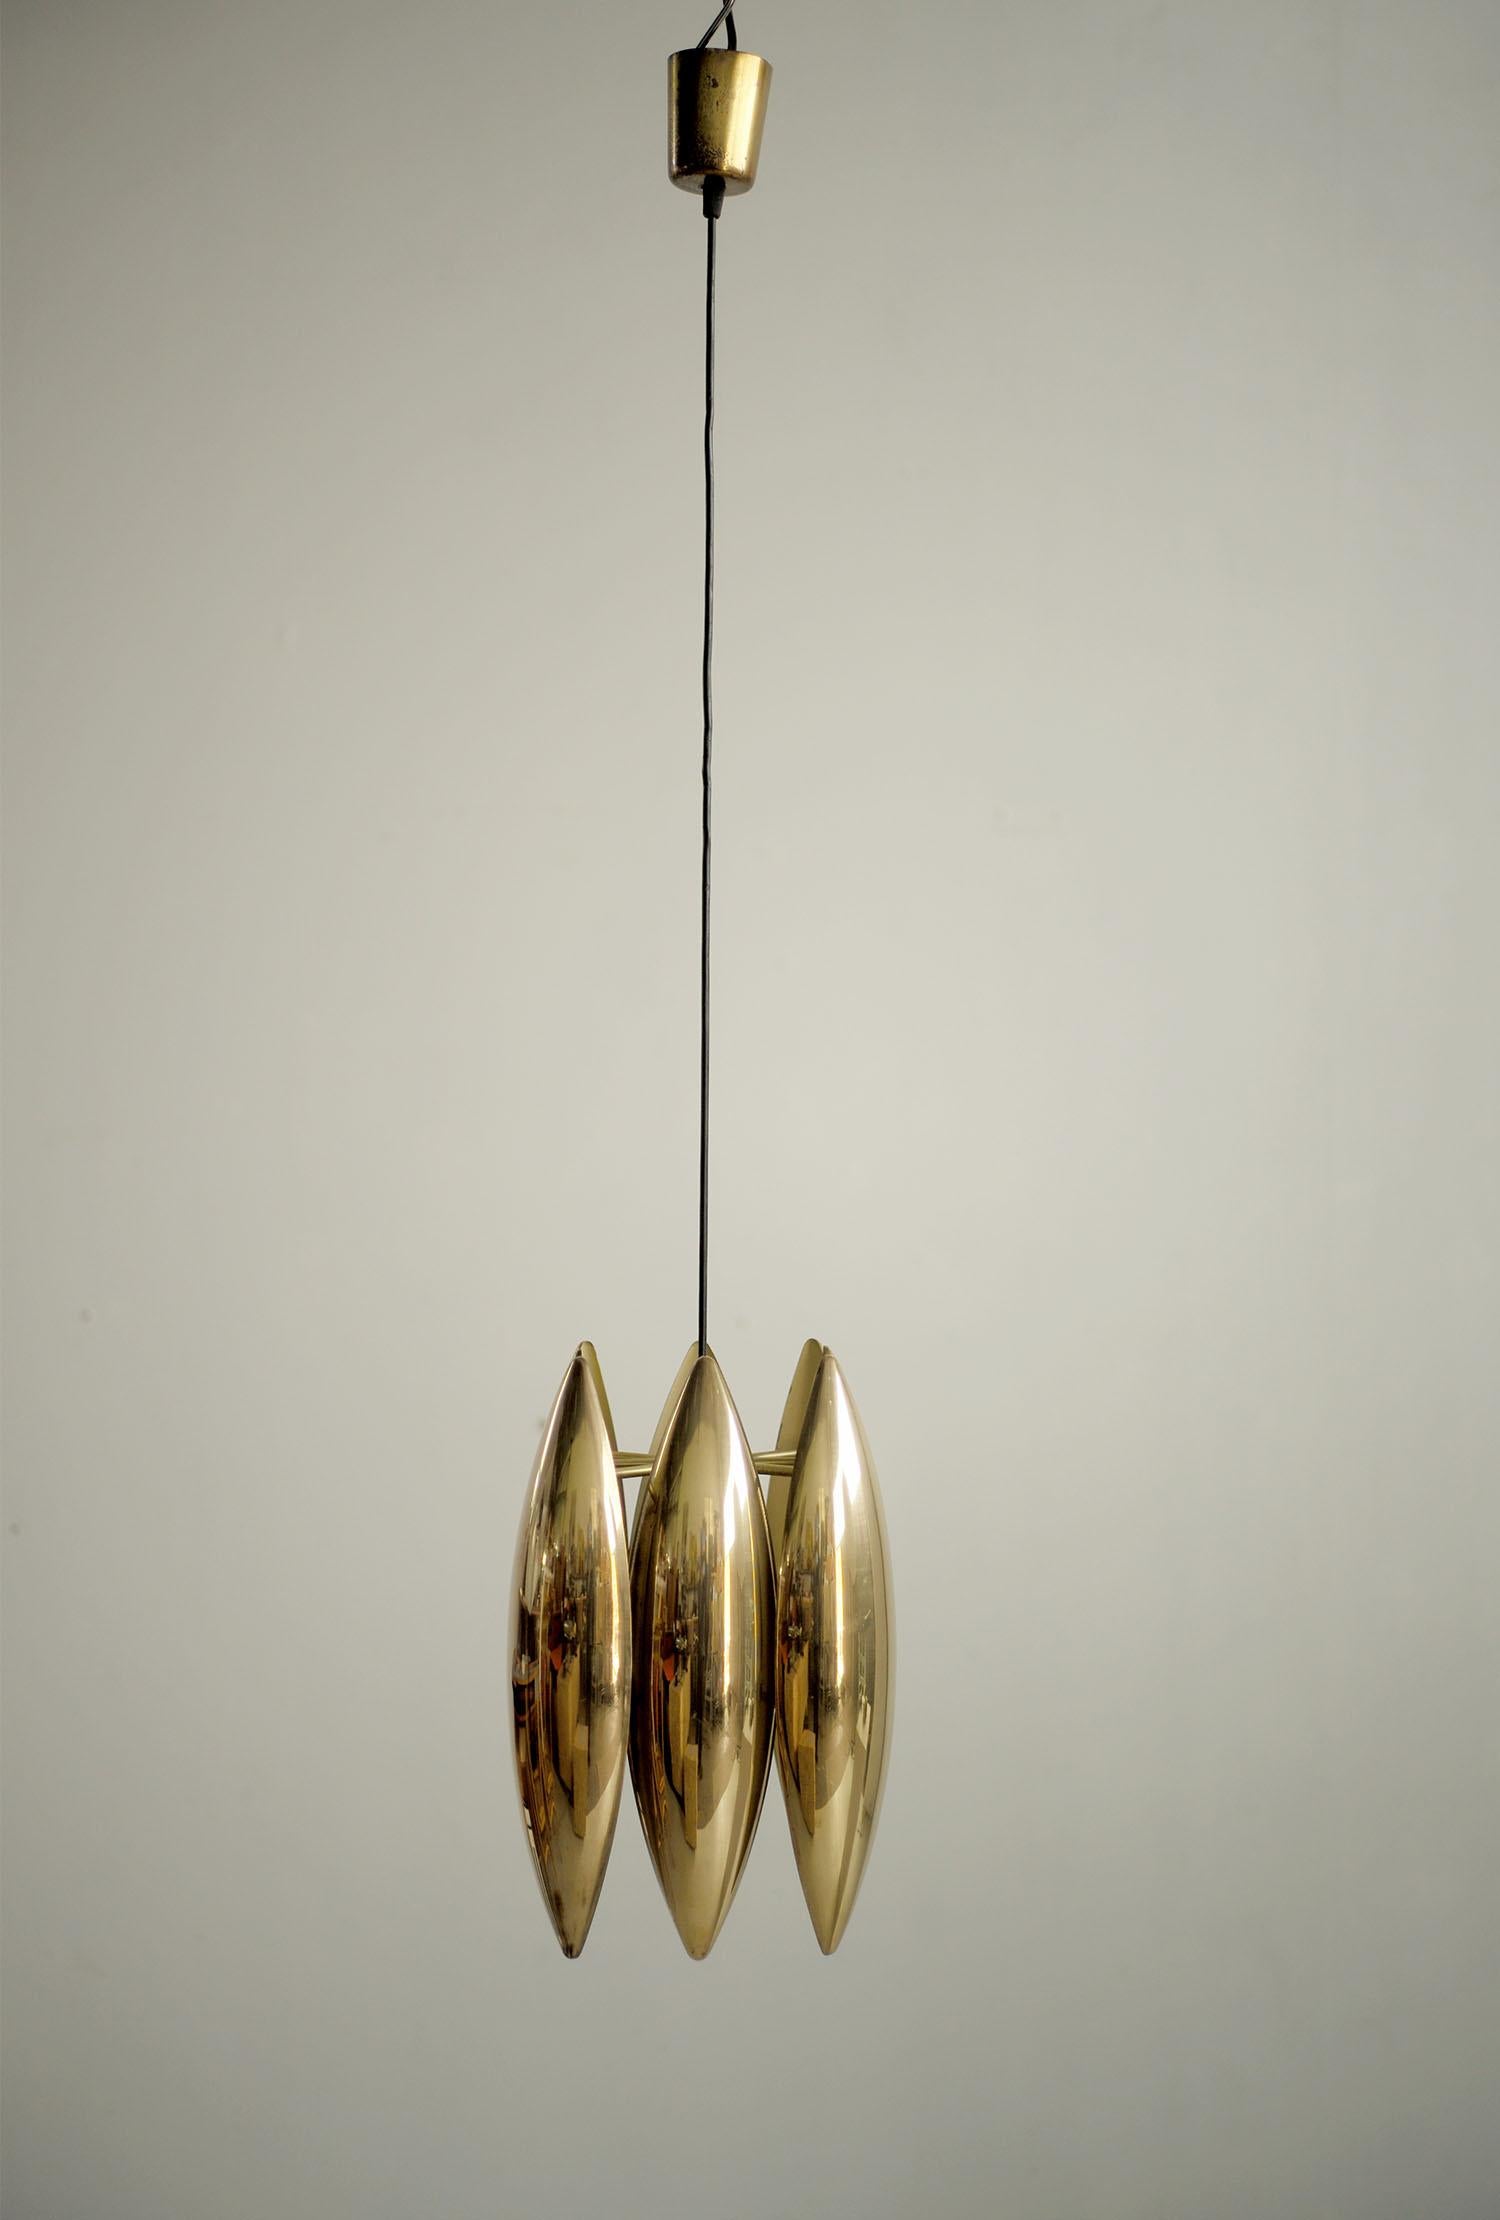 Brass Jo Hammerborg, Kastor pendant light for Fog & Morup, Denmark, 1969. For Sale